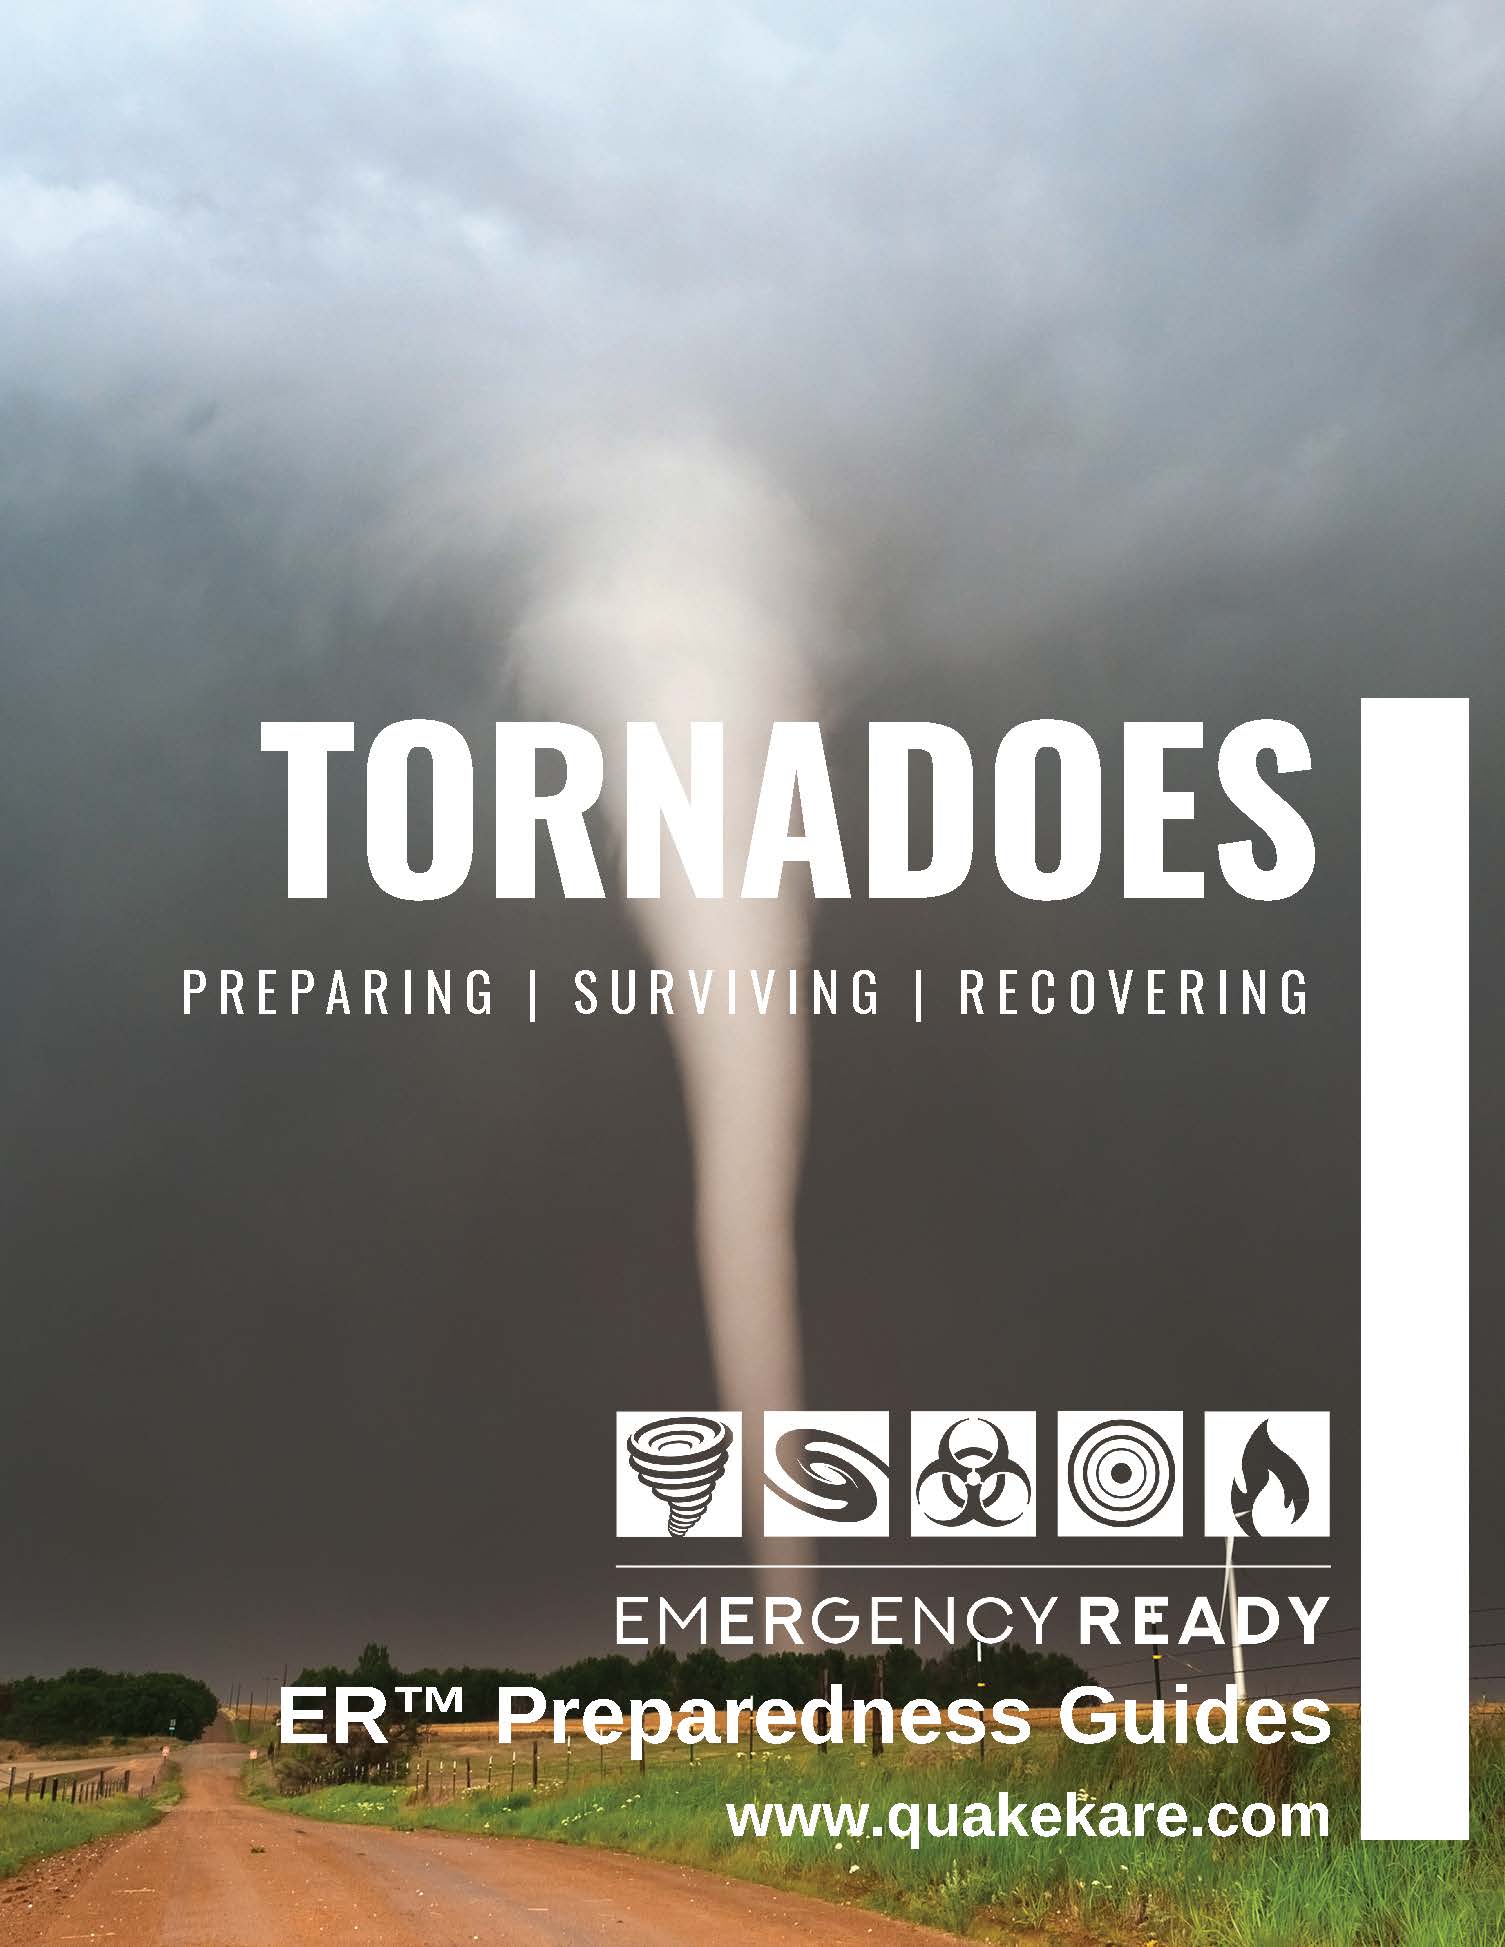 Click to Dowload PDF of Tornado Preparedness Guide